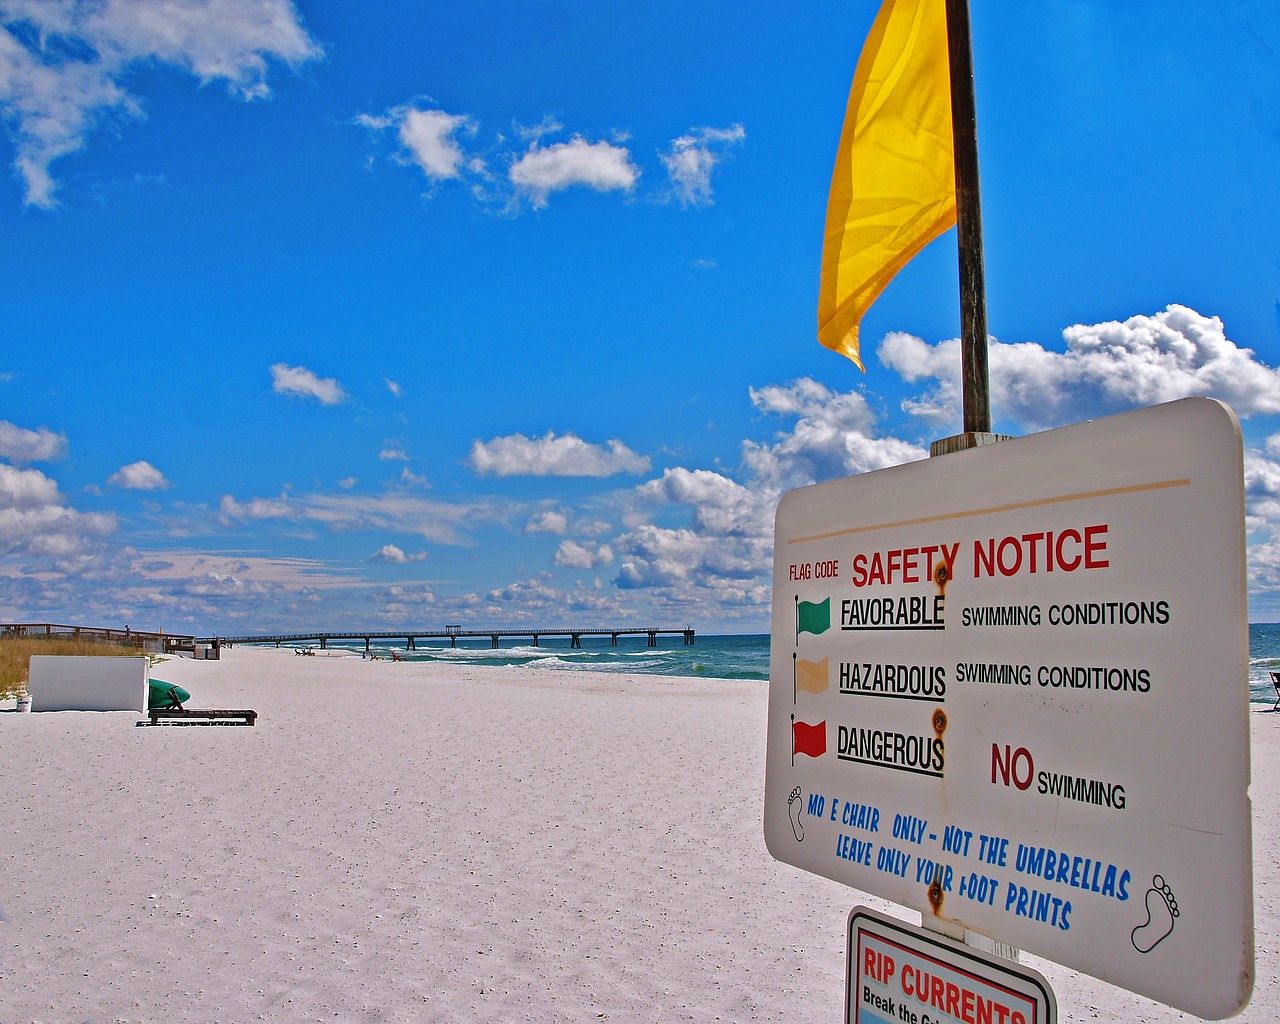 Warning flag at the beach